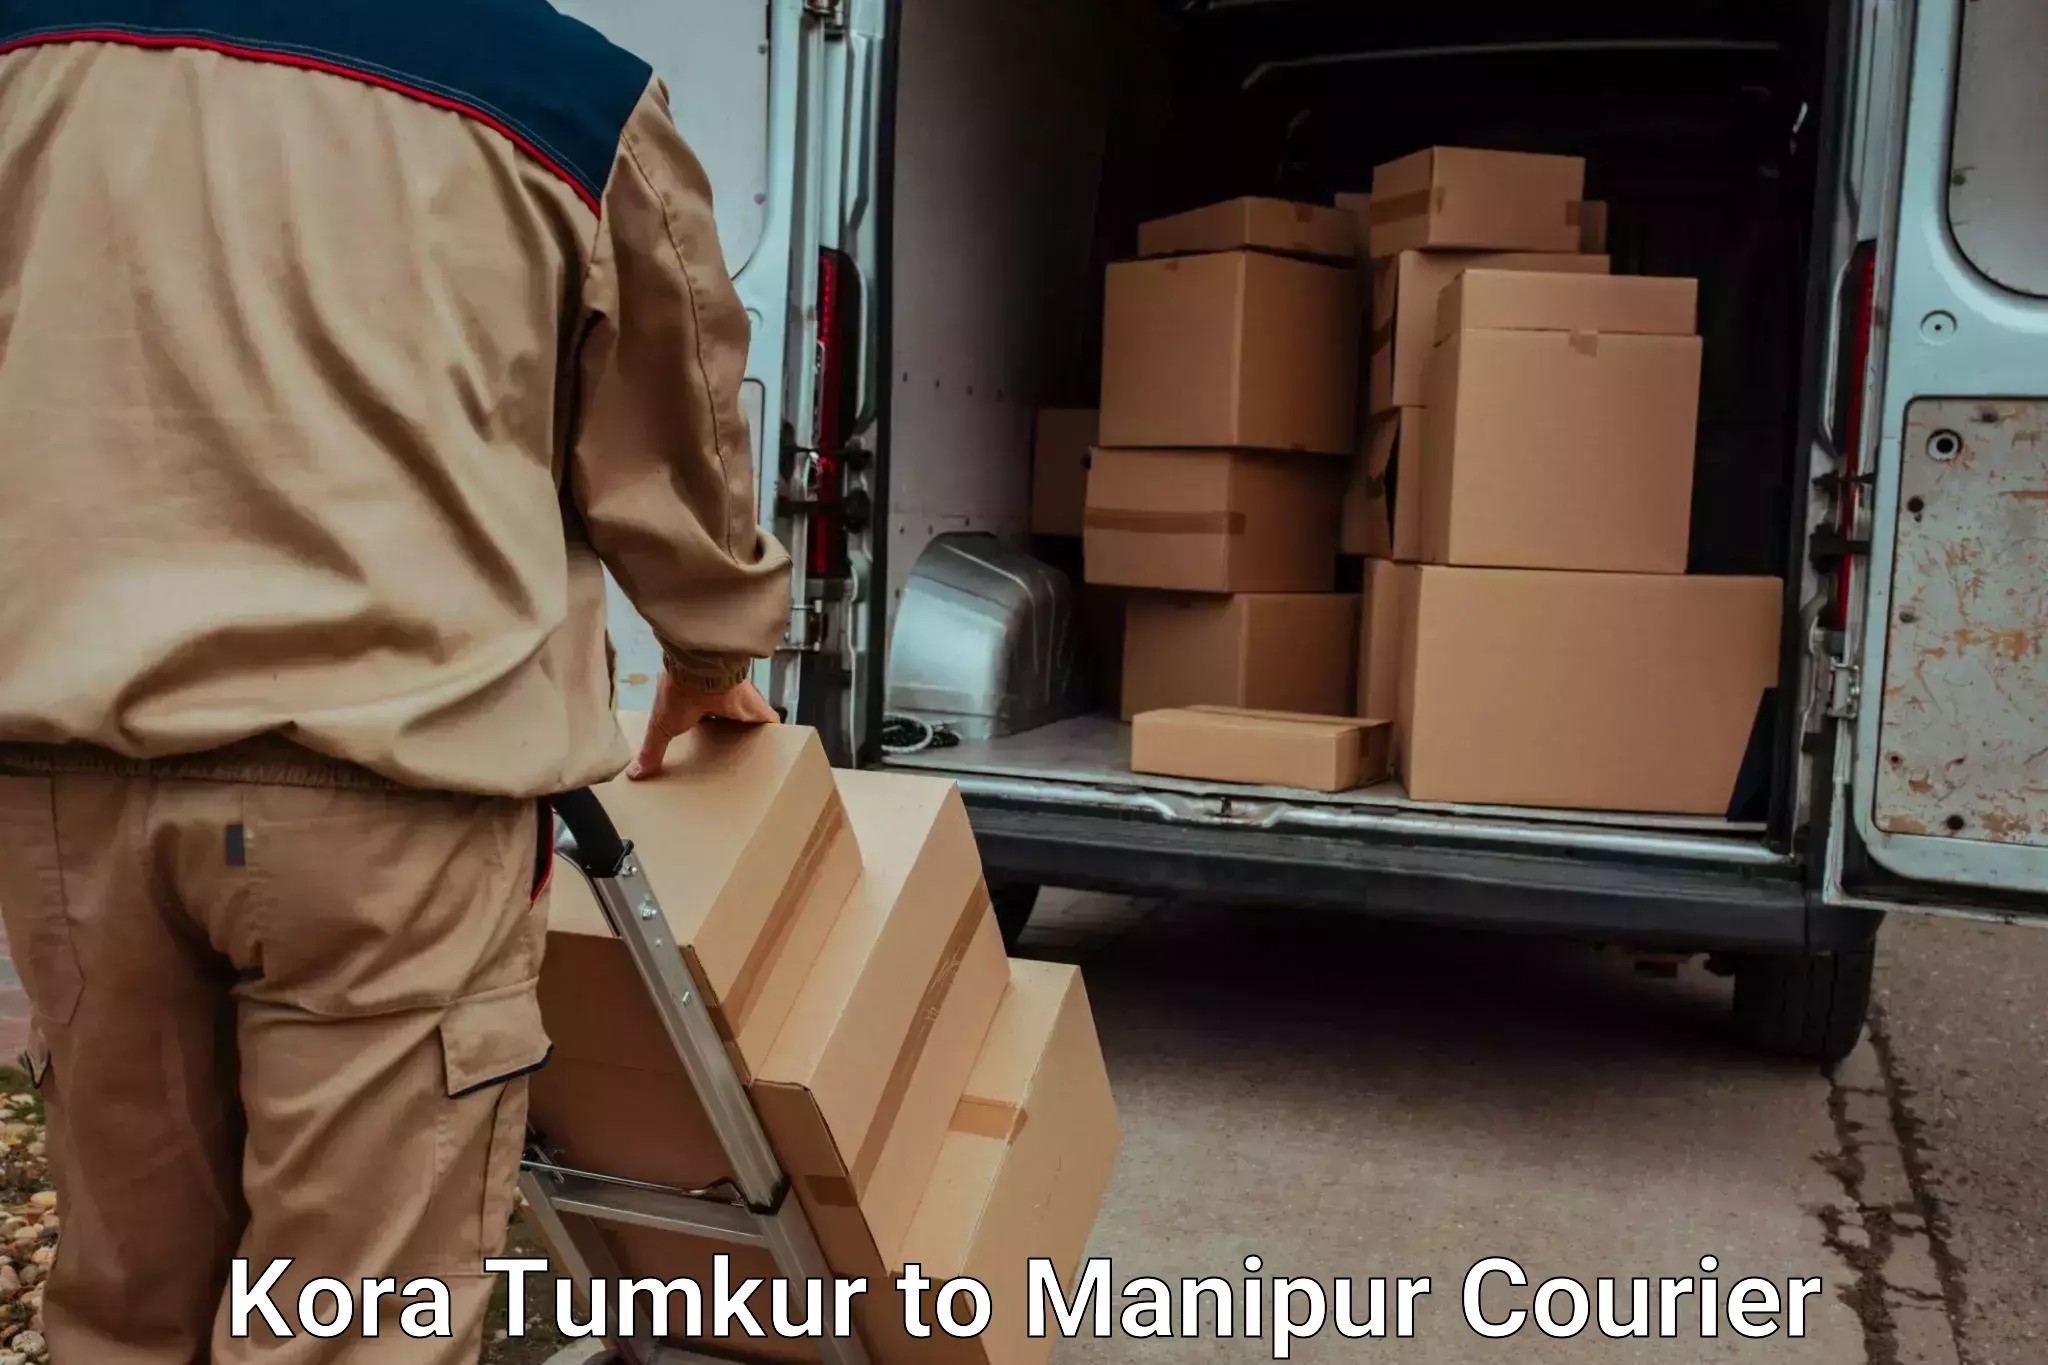 Efficient furniture transport Kora Tumkur to Manipur